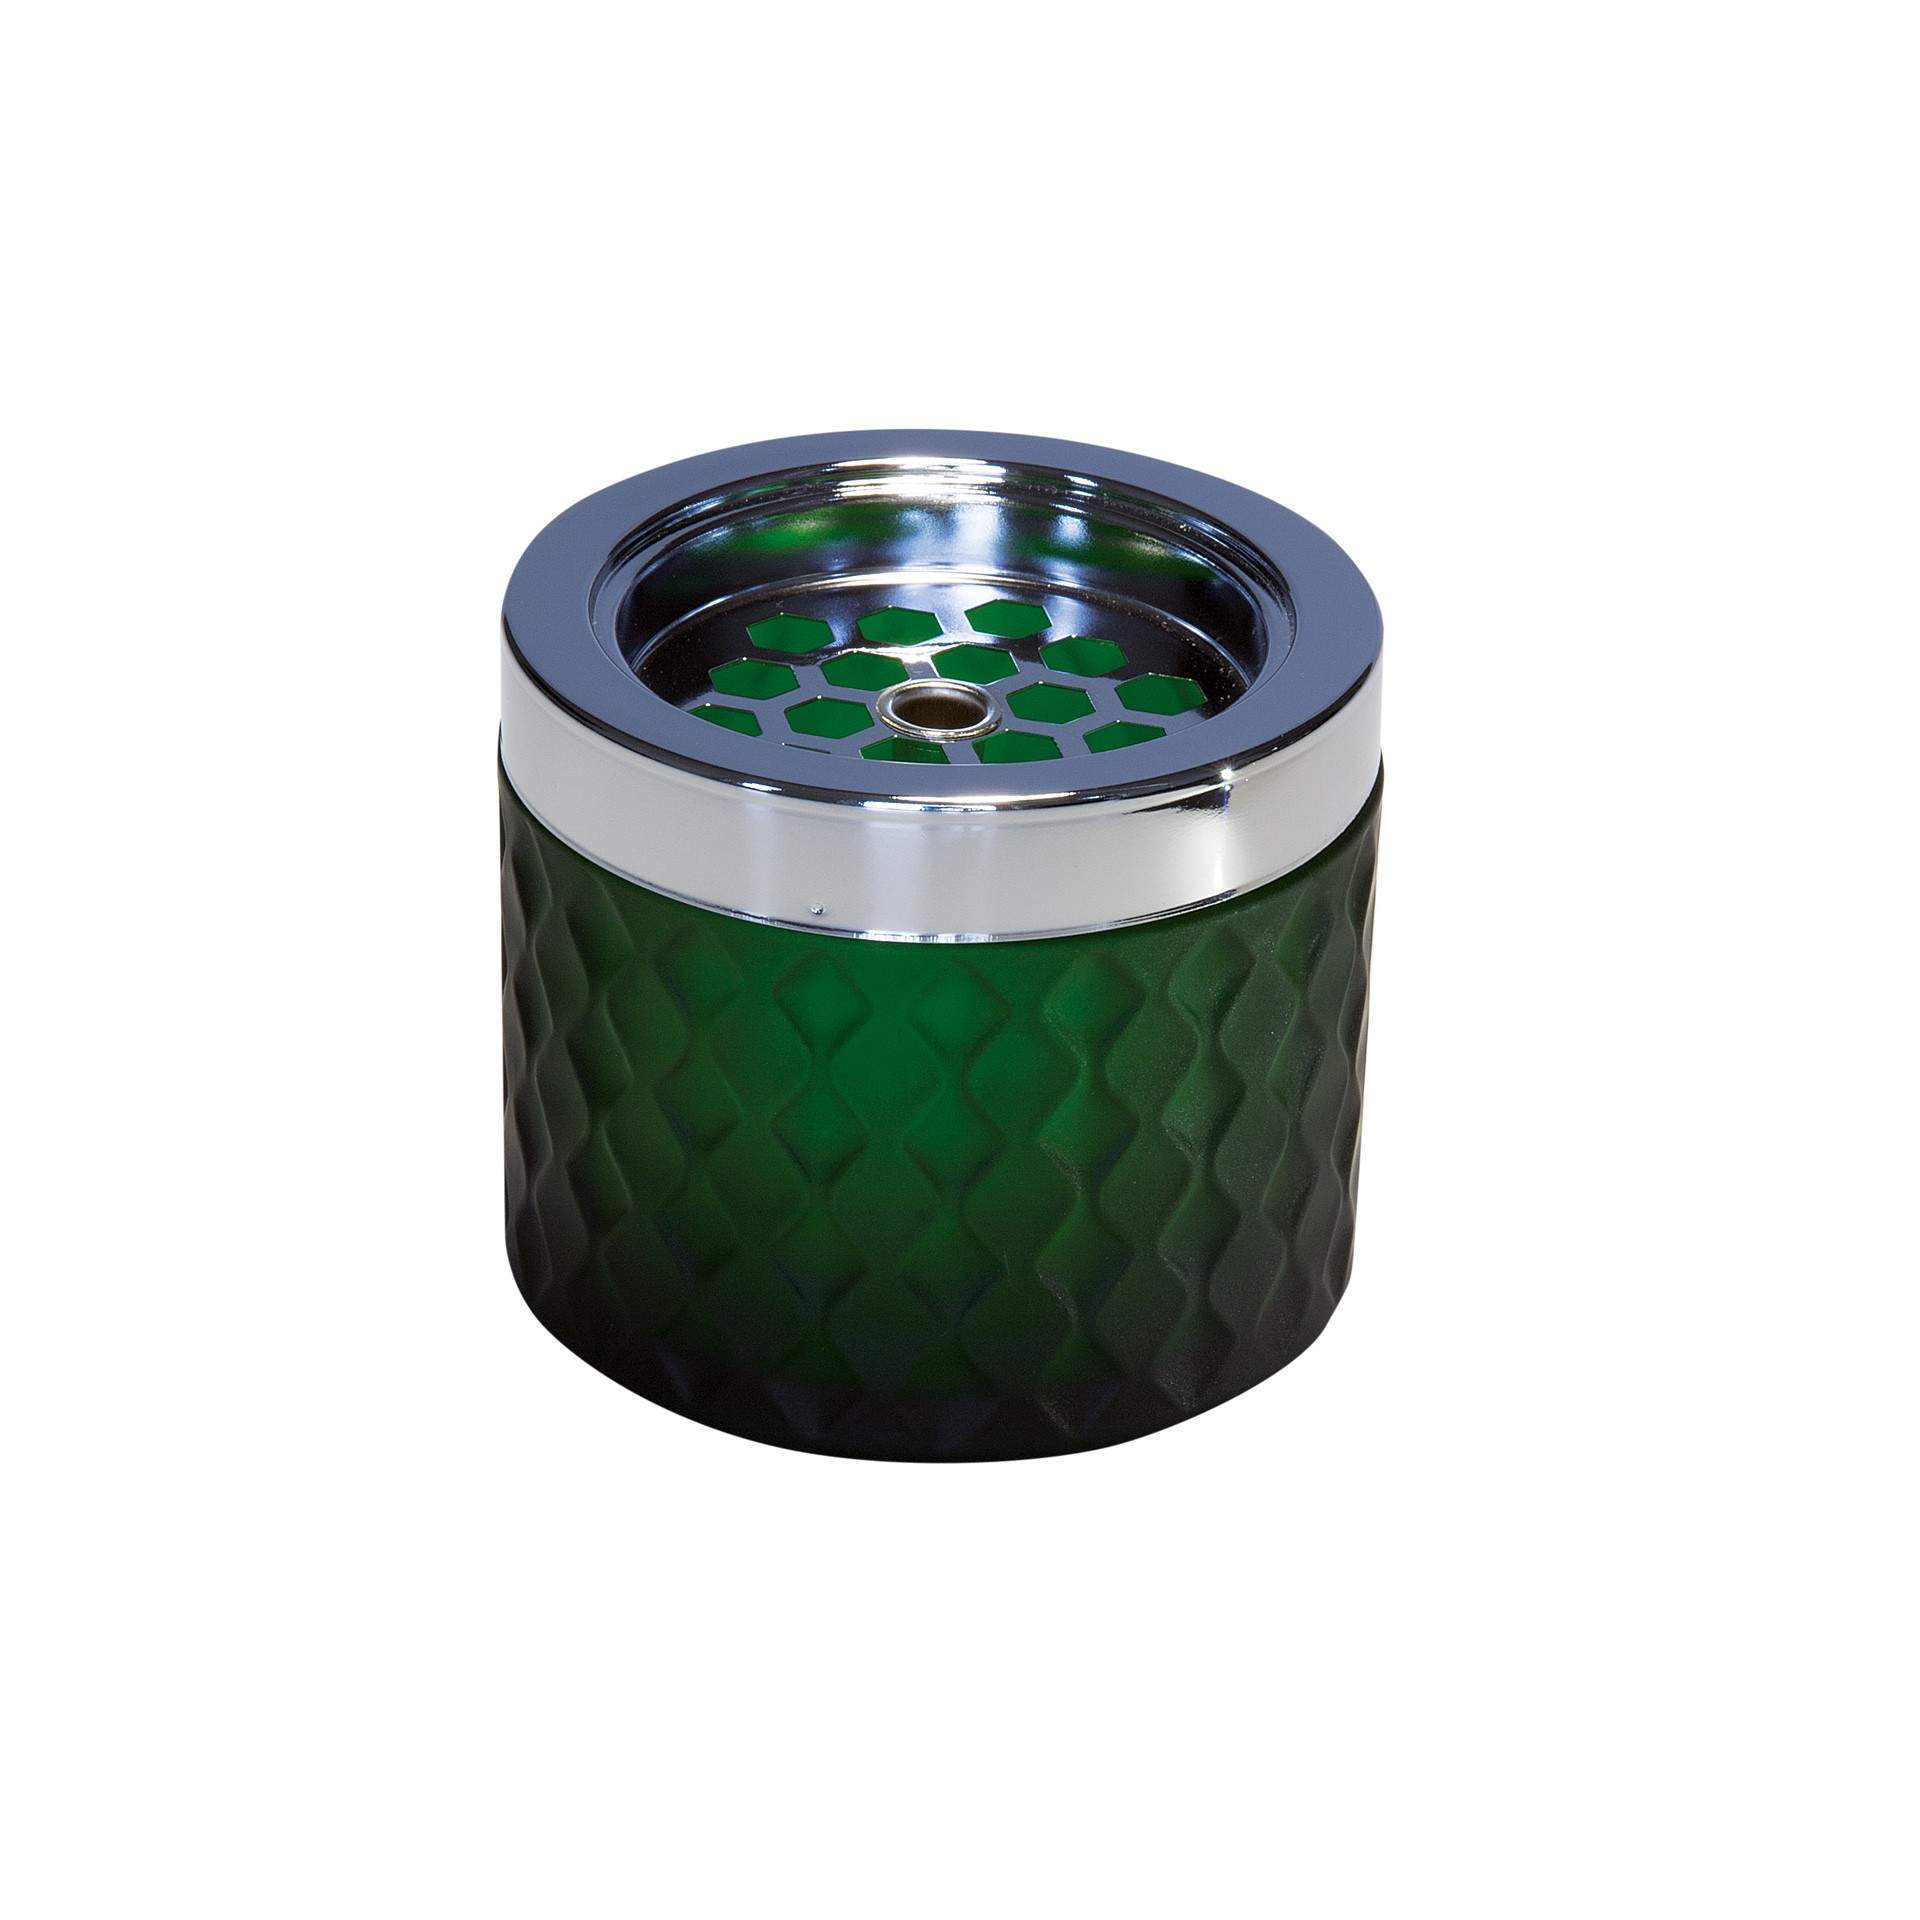 Wind-Aschenbecher - mattes, gefrostetes Glas - dunkelgrün - Abm. 8,0 cm - Ø 9,5 cm - Glas - 562-B